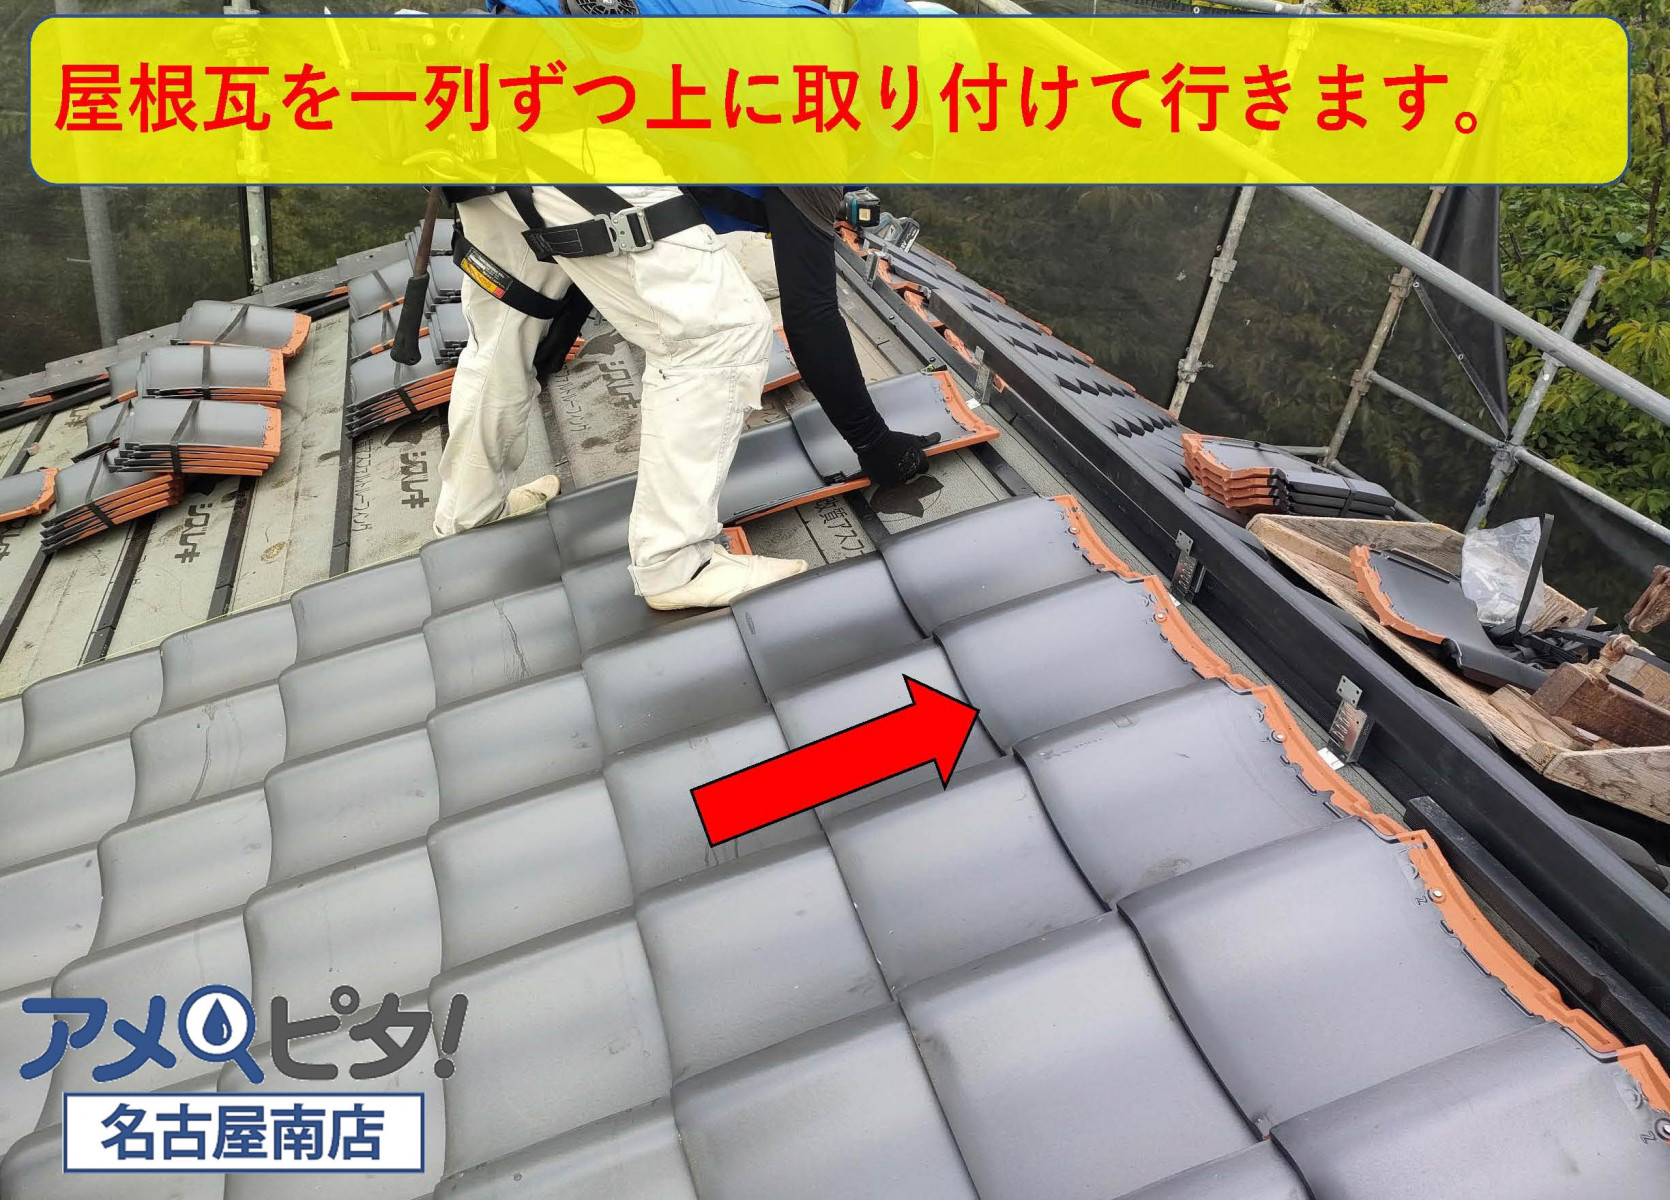 和風の屋根瓦の施工方法で、一列ずつ上に登りながら施工していきます